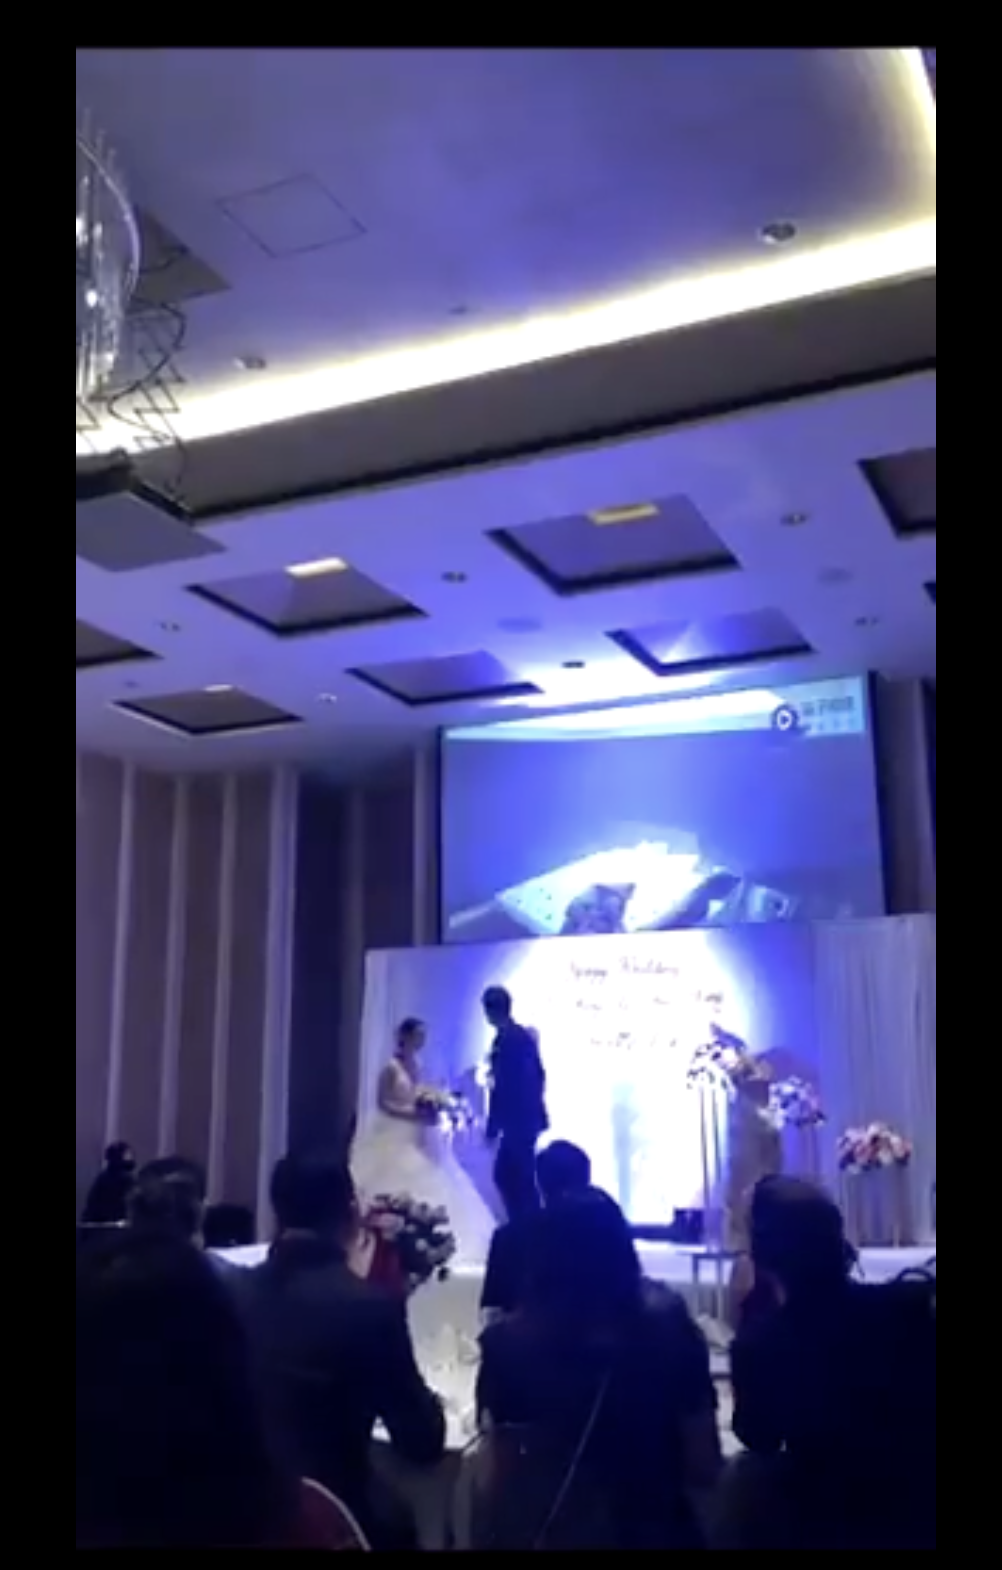 Les mariés se tournent vers le projecteur situé derrière eux | Source : twitter.com/TuanConCom1